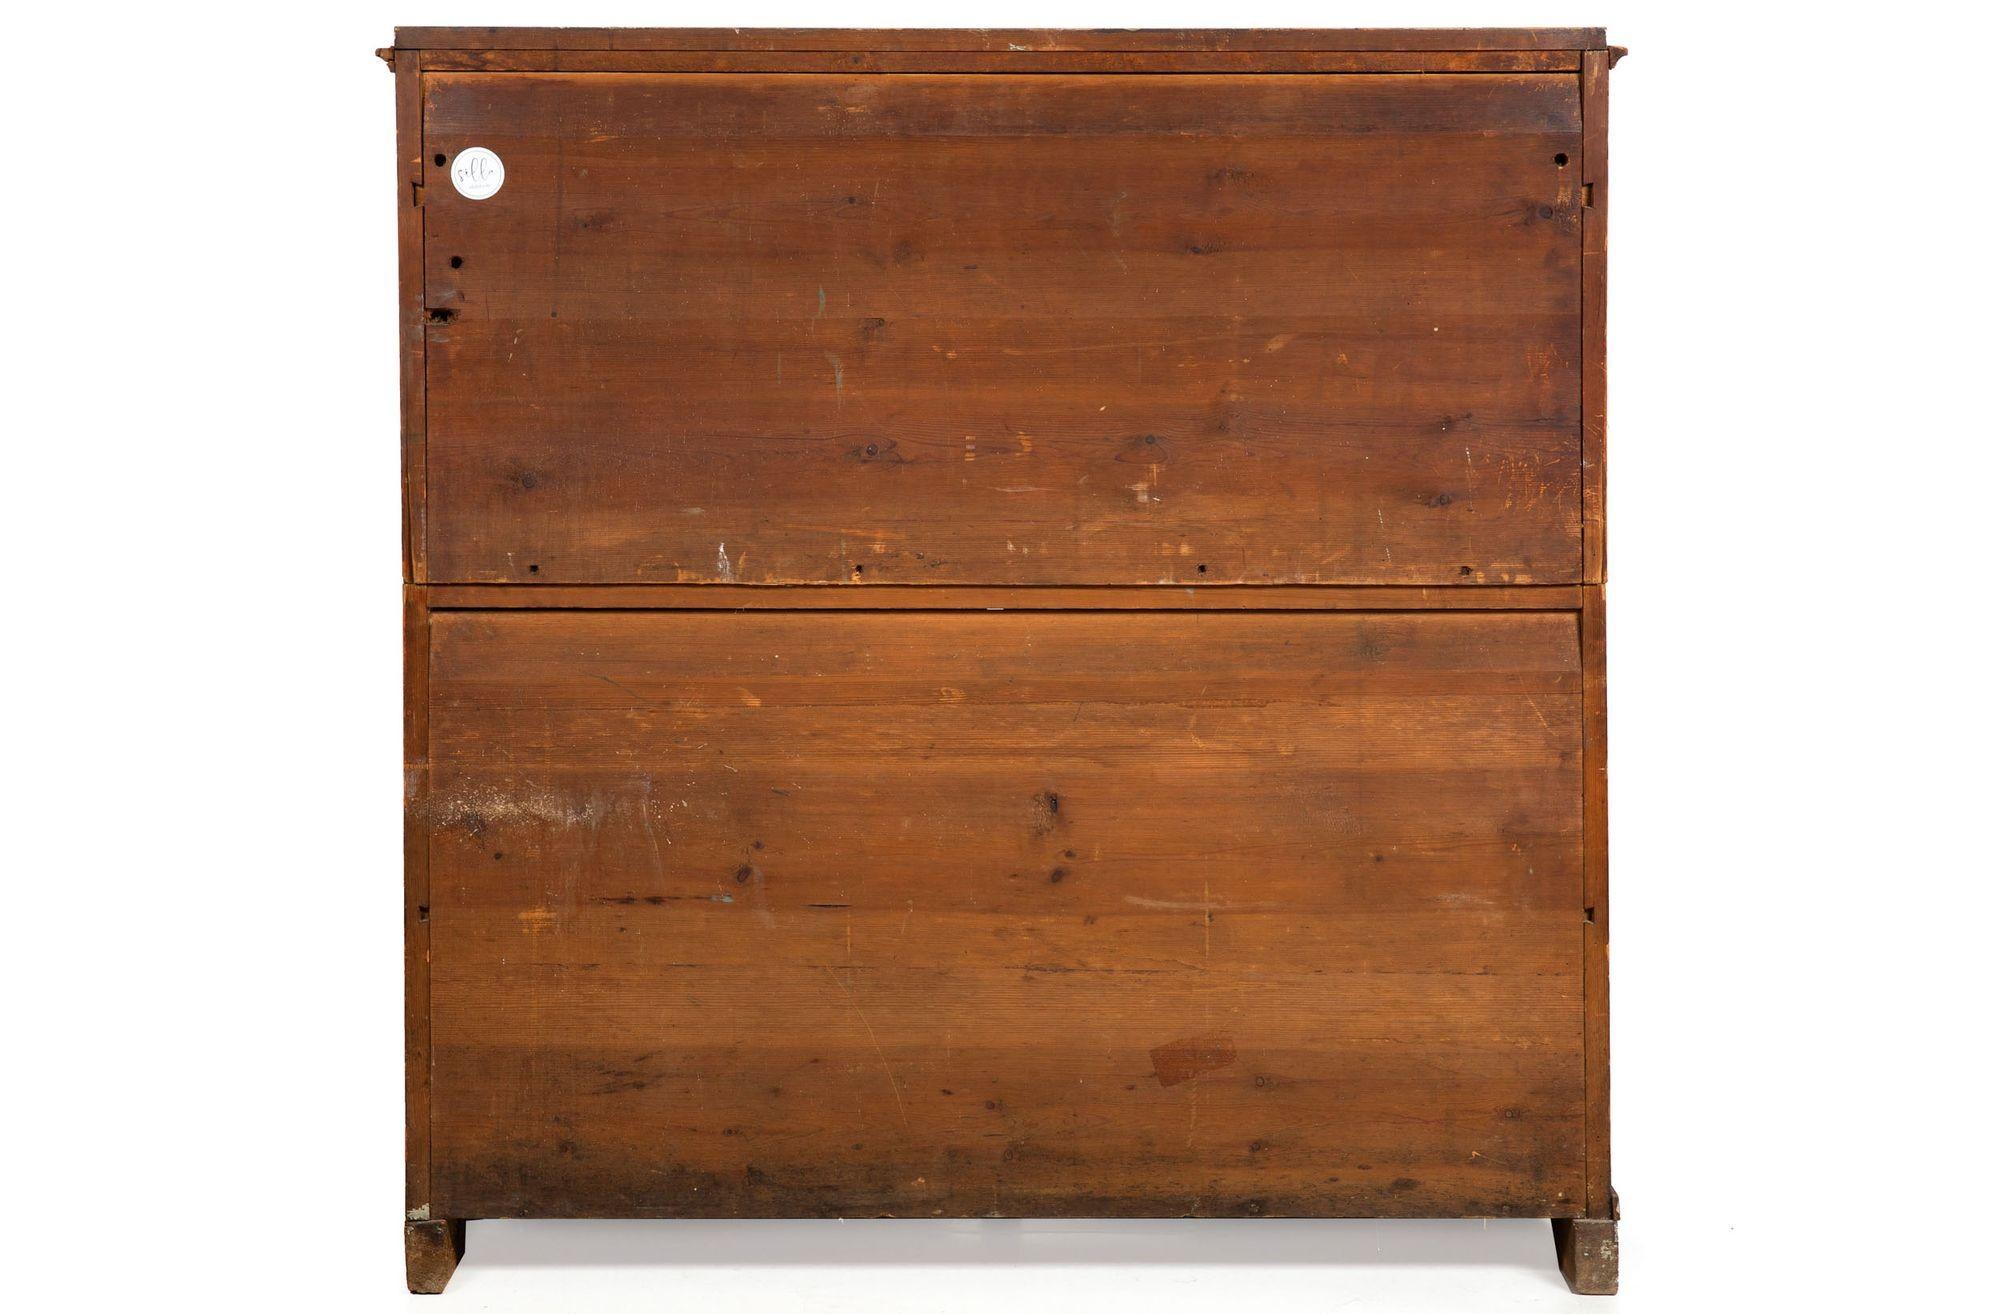 XIXe siècle Bureau ancien peint de style gustavien sur meuble, suédois ou danois vers 1820-40